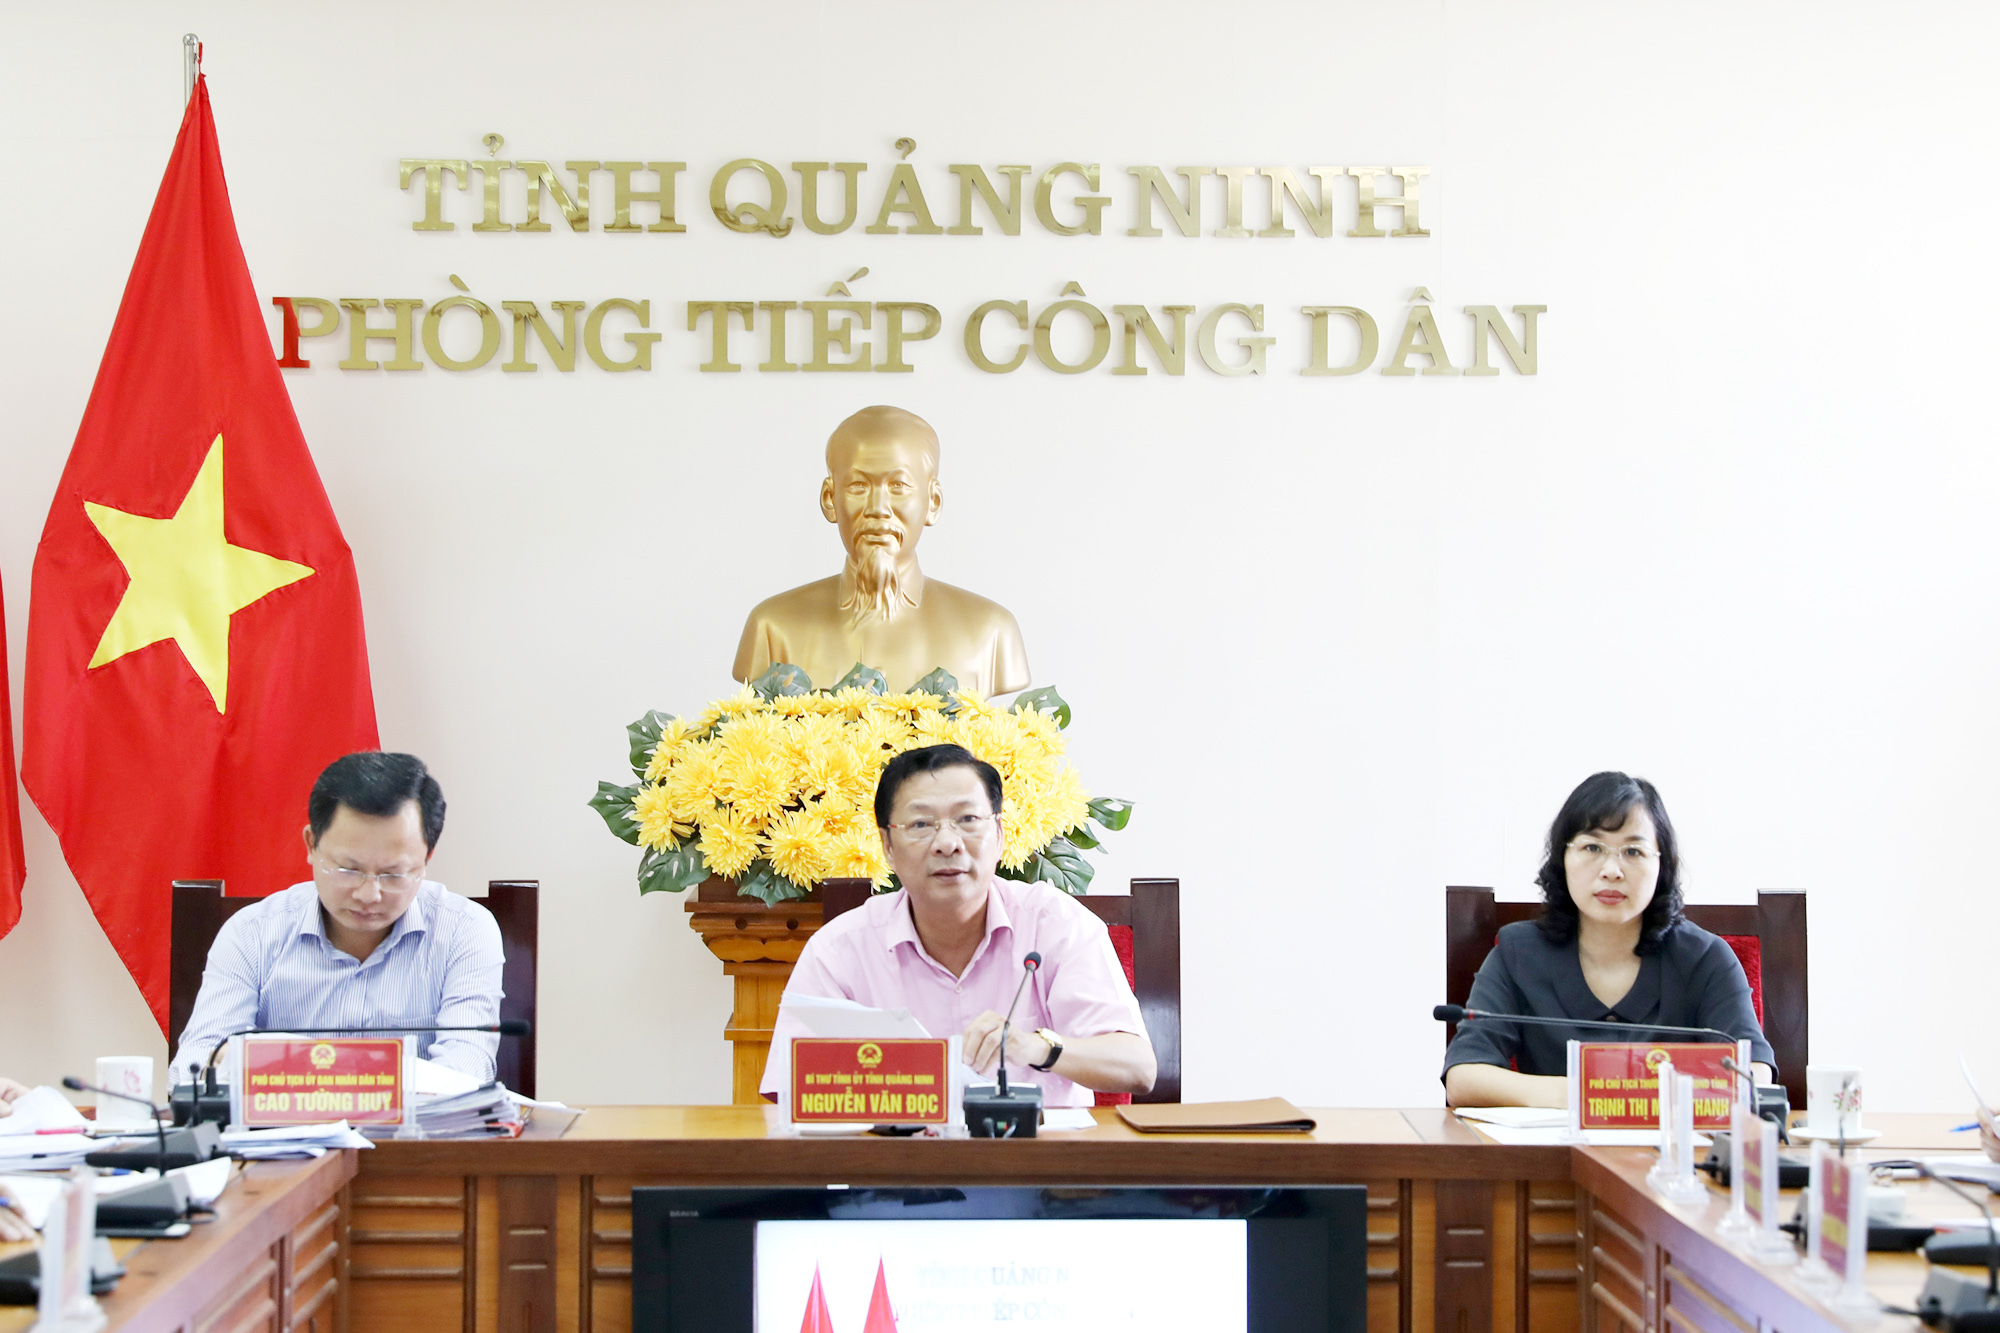 Bí thư Tỉnh uỷ Nguyễn Văn Đọc chủ trì buổi tiếp công dân hàng tháng của tỉnh.